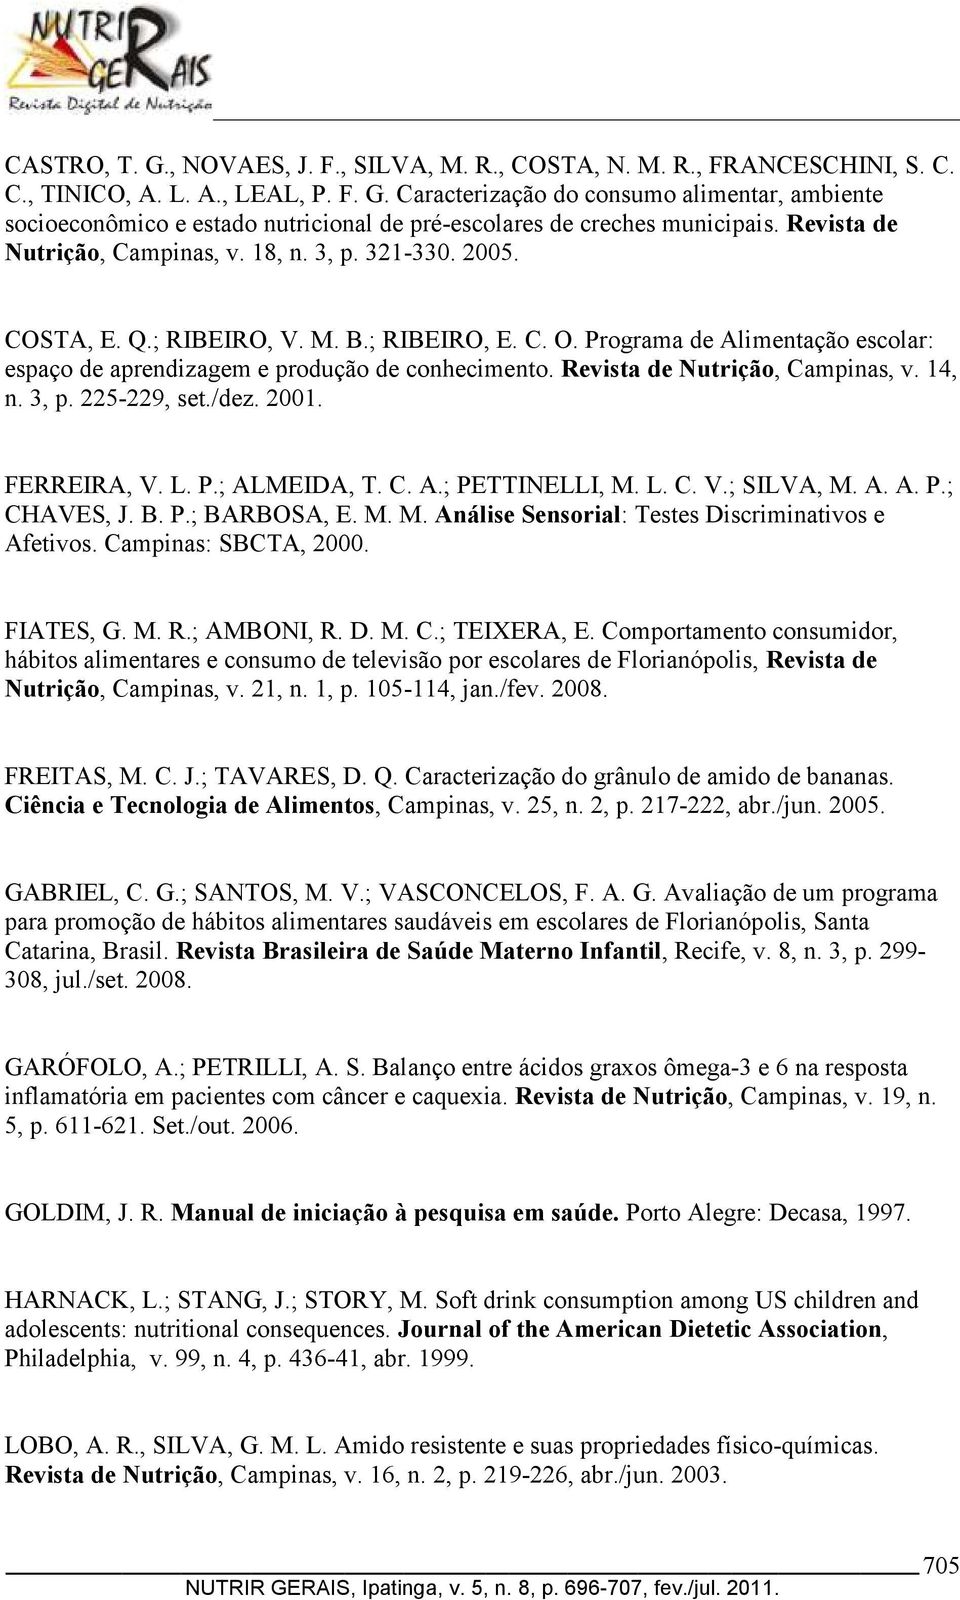 Revista de Nutrição, Campinas, v. 14, n. 3, p. 225-229, set./dez. 2001. FERREIRA, V. L. P.; ALMEIDA, T. C. A.; PETTINELLI, M. L. C. V.; SILVA, M. A. A. P.; CHAVES, J. B. P.; BARBOSA, E. M. M. Análise Sensorial: Testes Discriminativos e Afetivos.